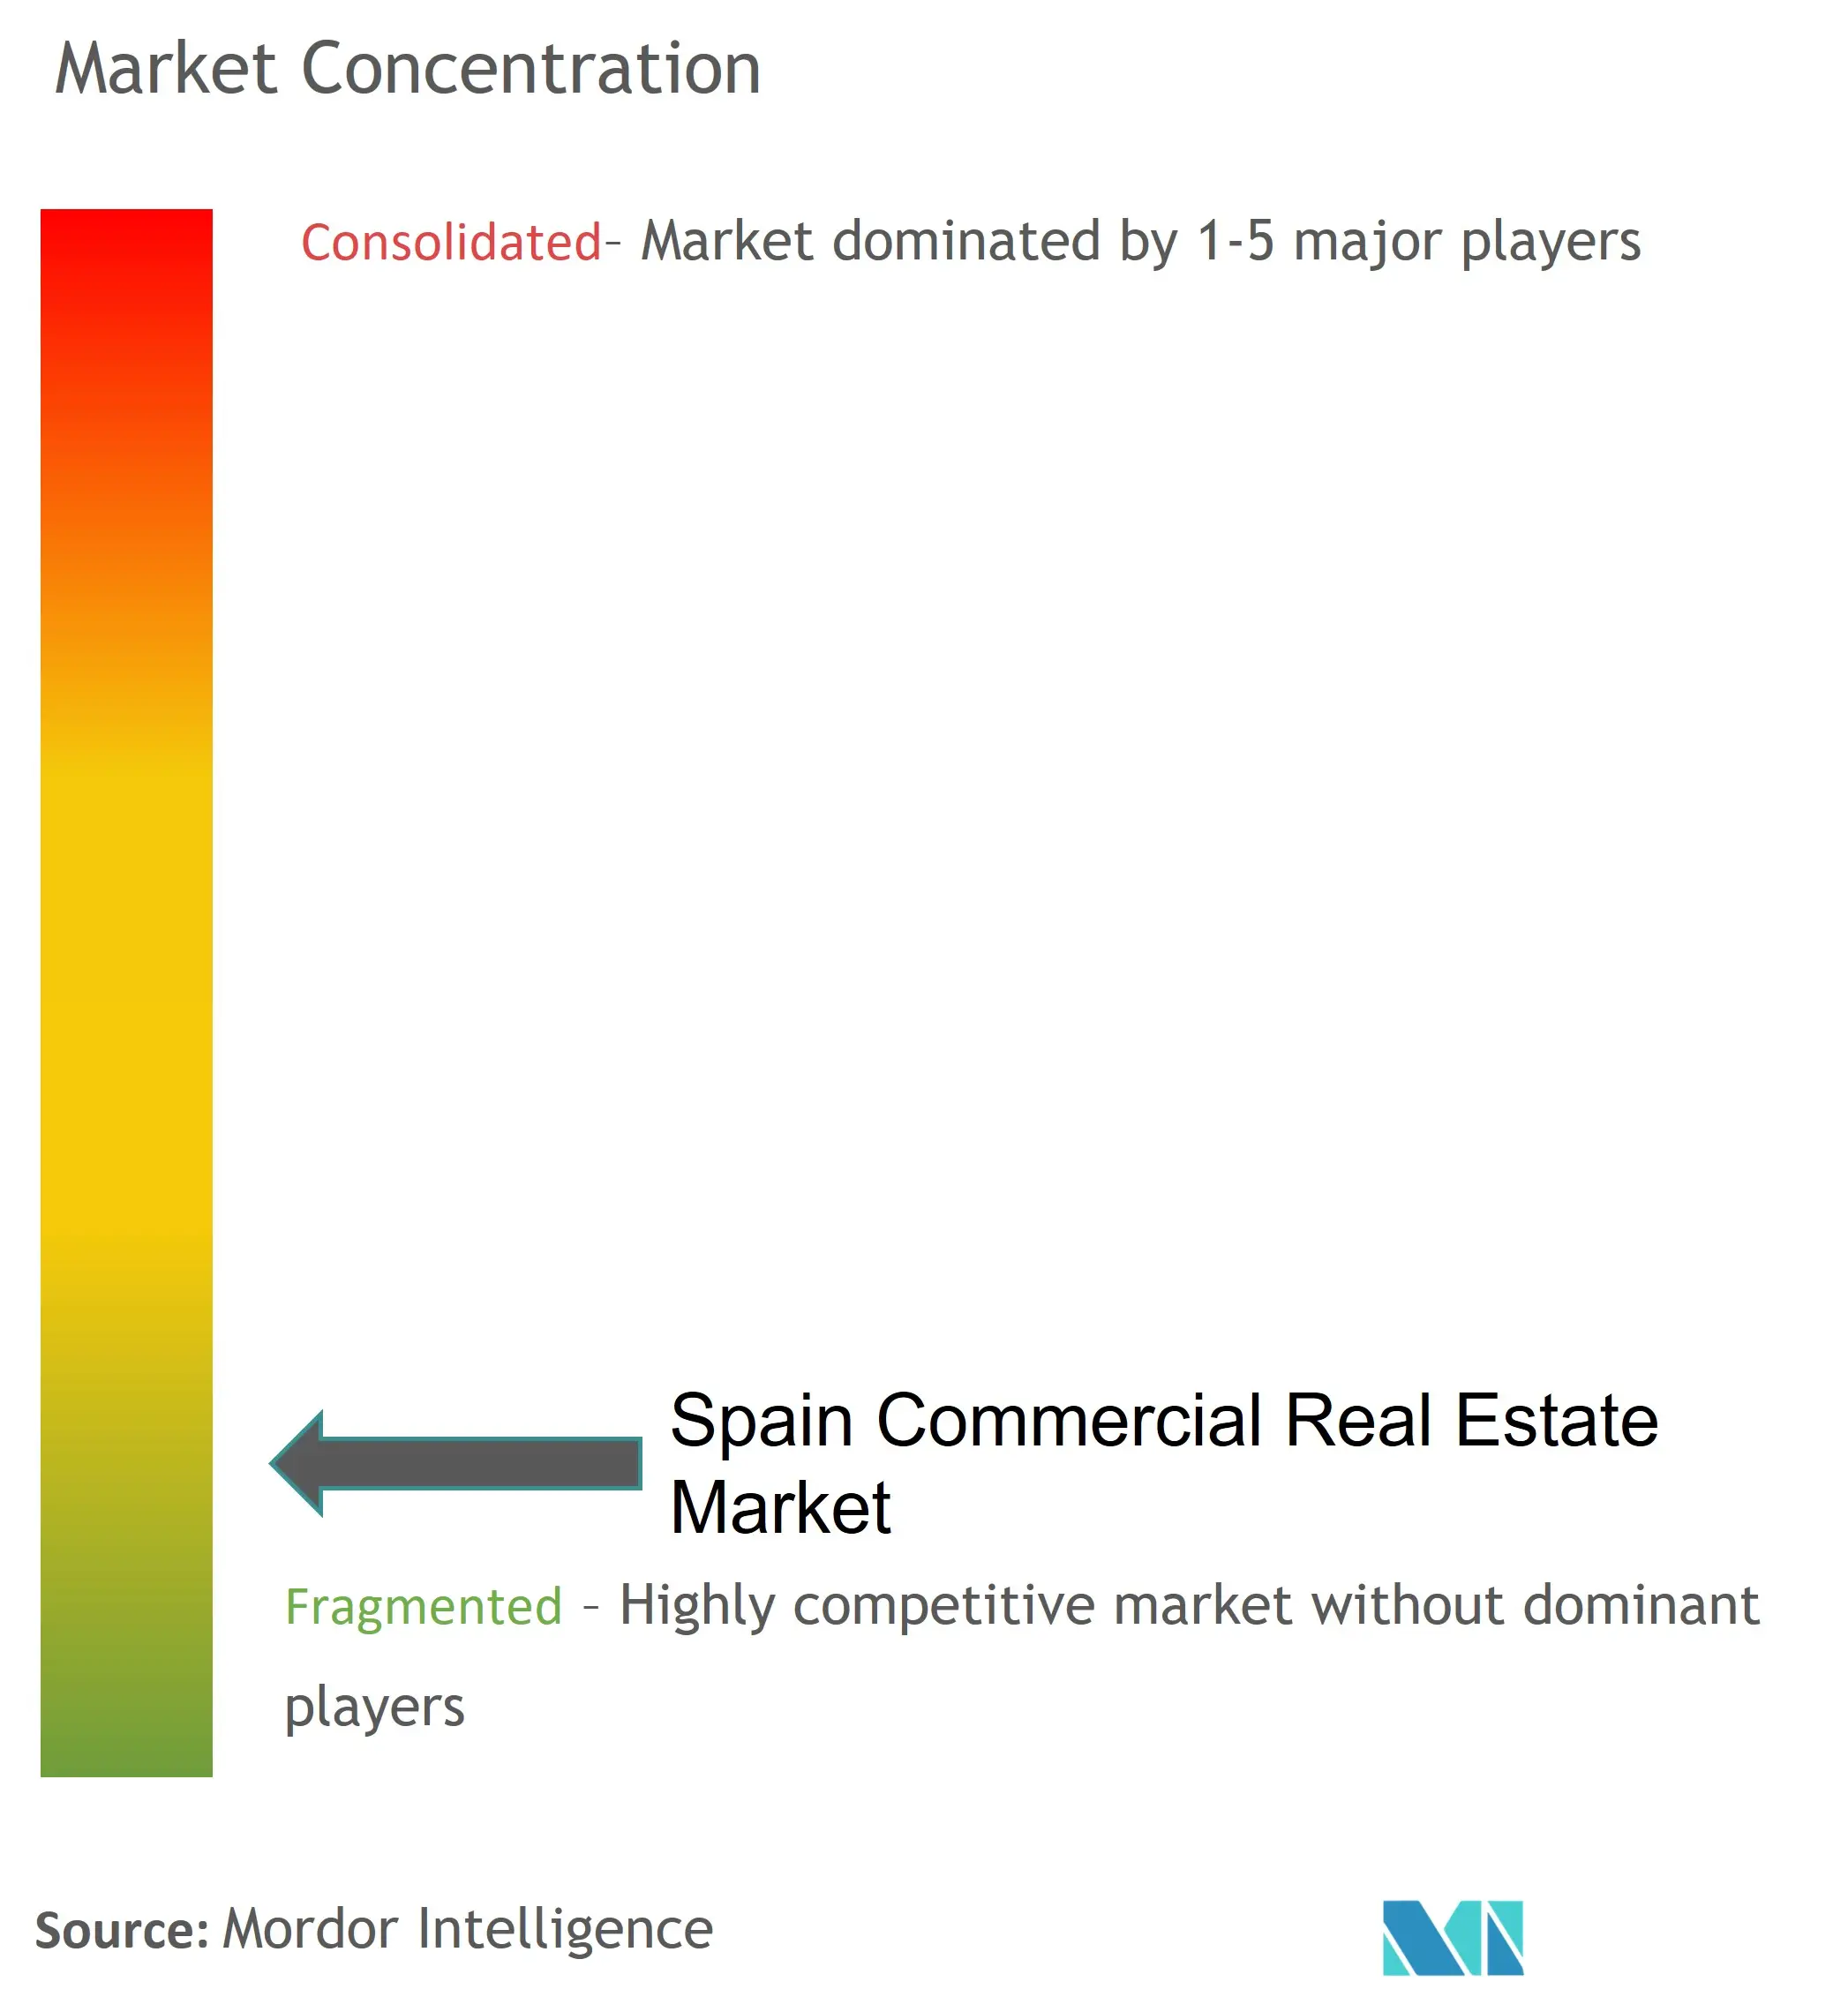 Konzentration des Gewerbeimmobilienmarktes in Spanien